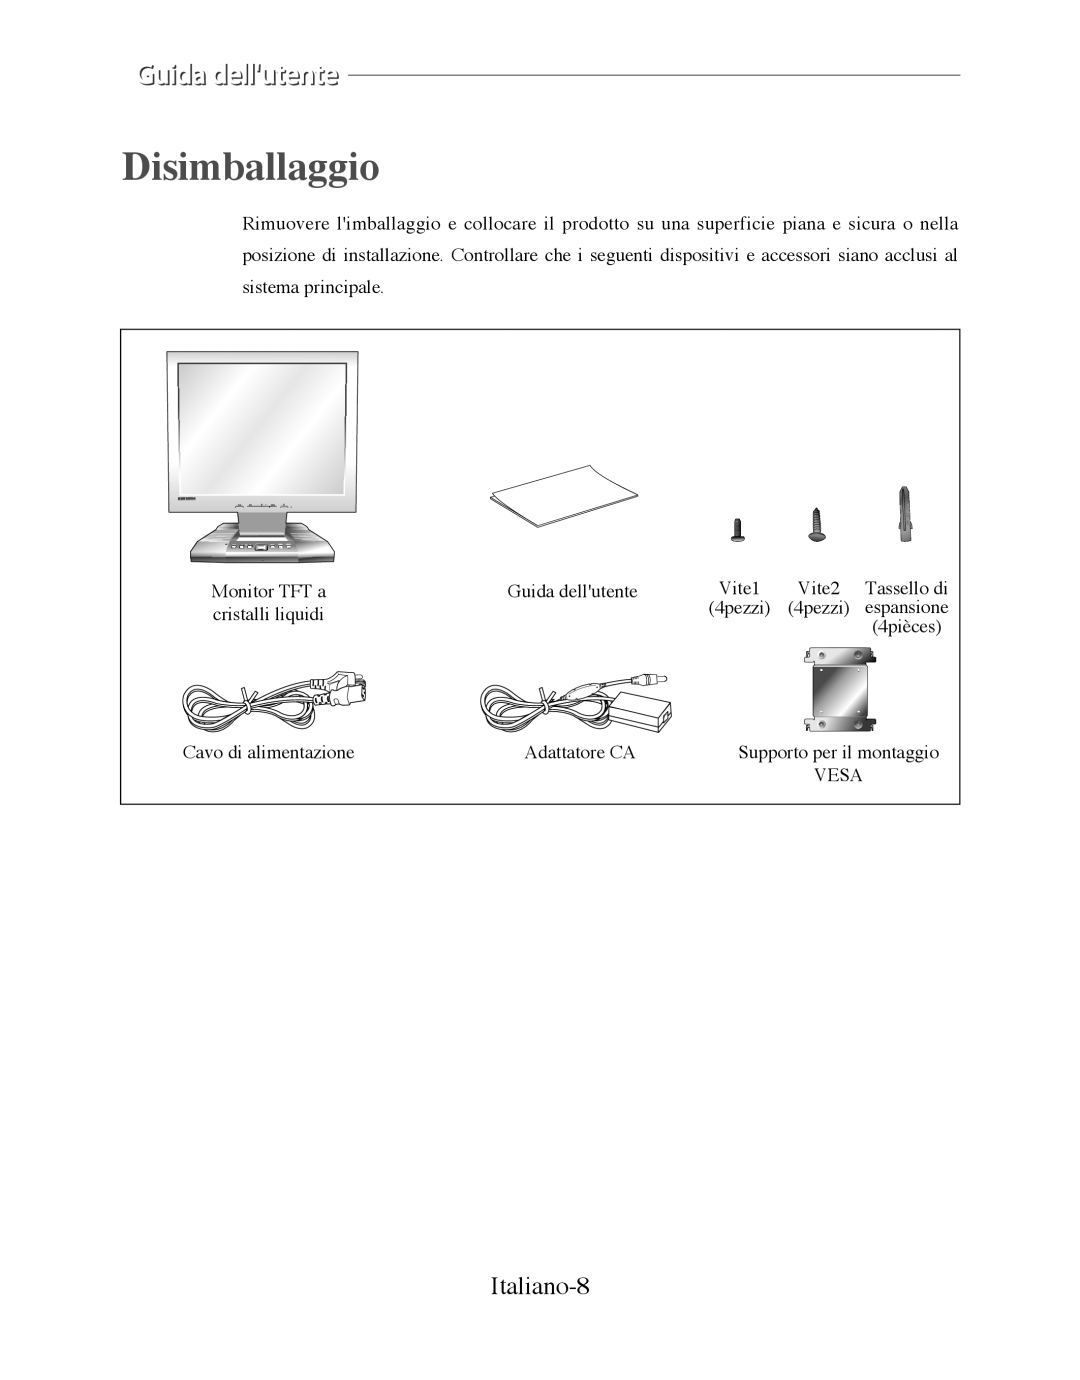 Samsung SMT-170P manual Disimballaggio, Italiano-8 